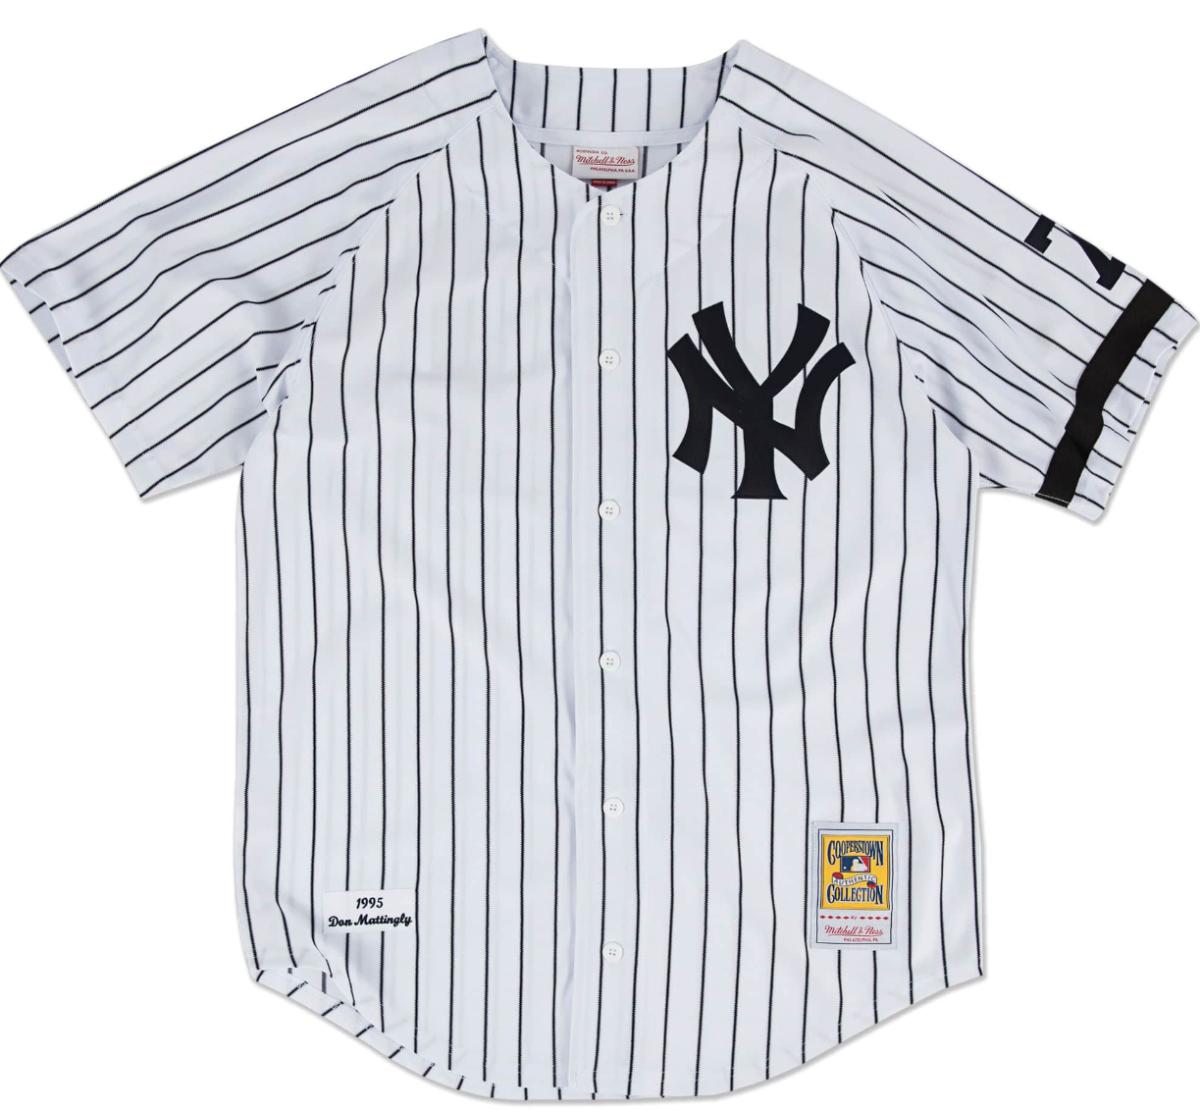 Authentic BP Jersey New York Yankees 1995 Derek Jeter - Shop